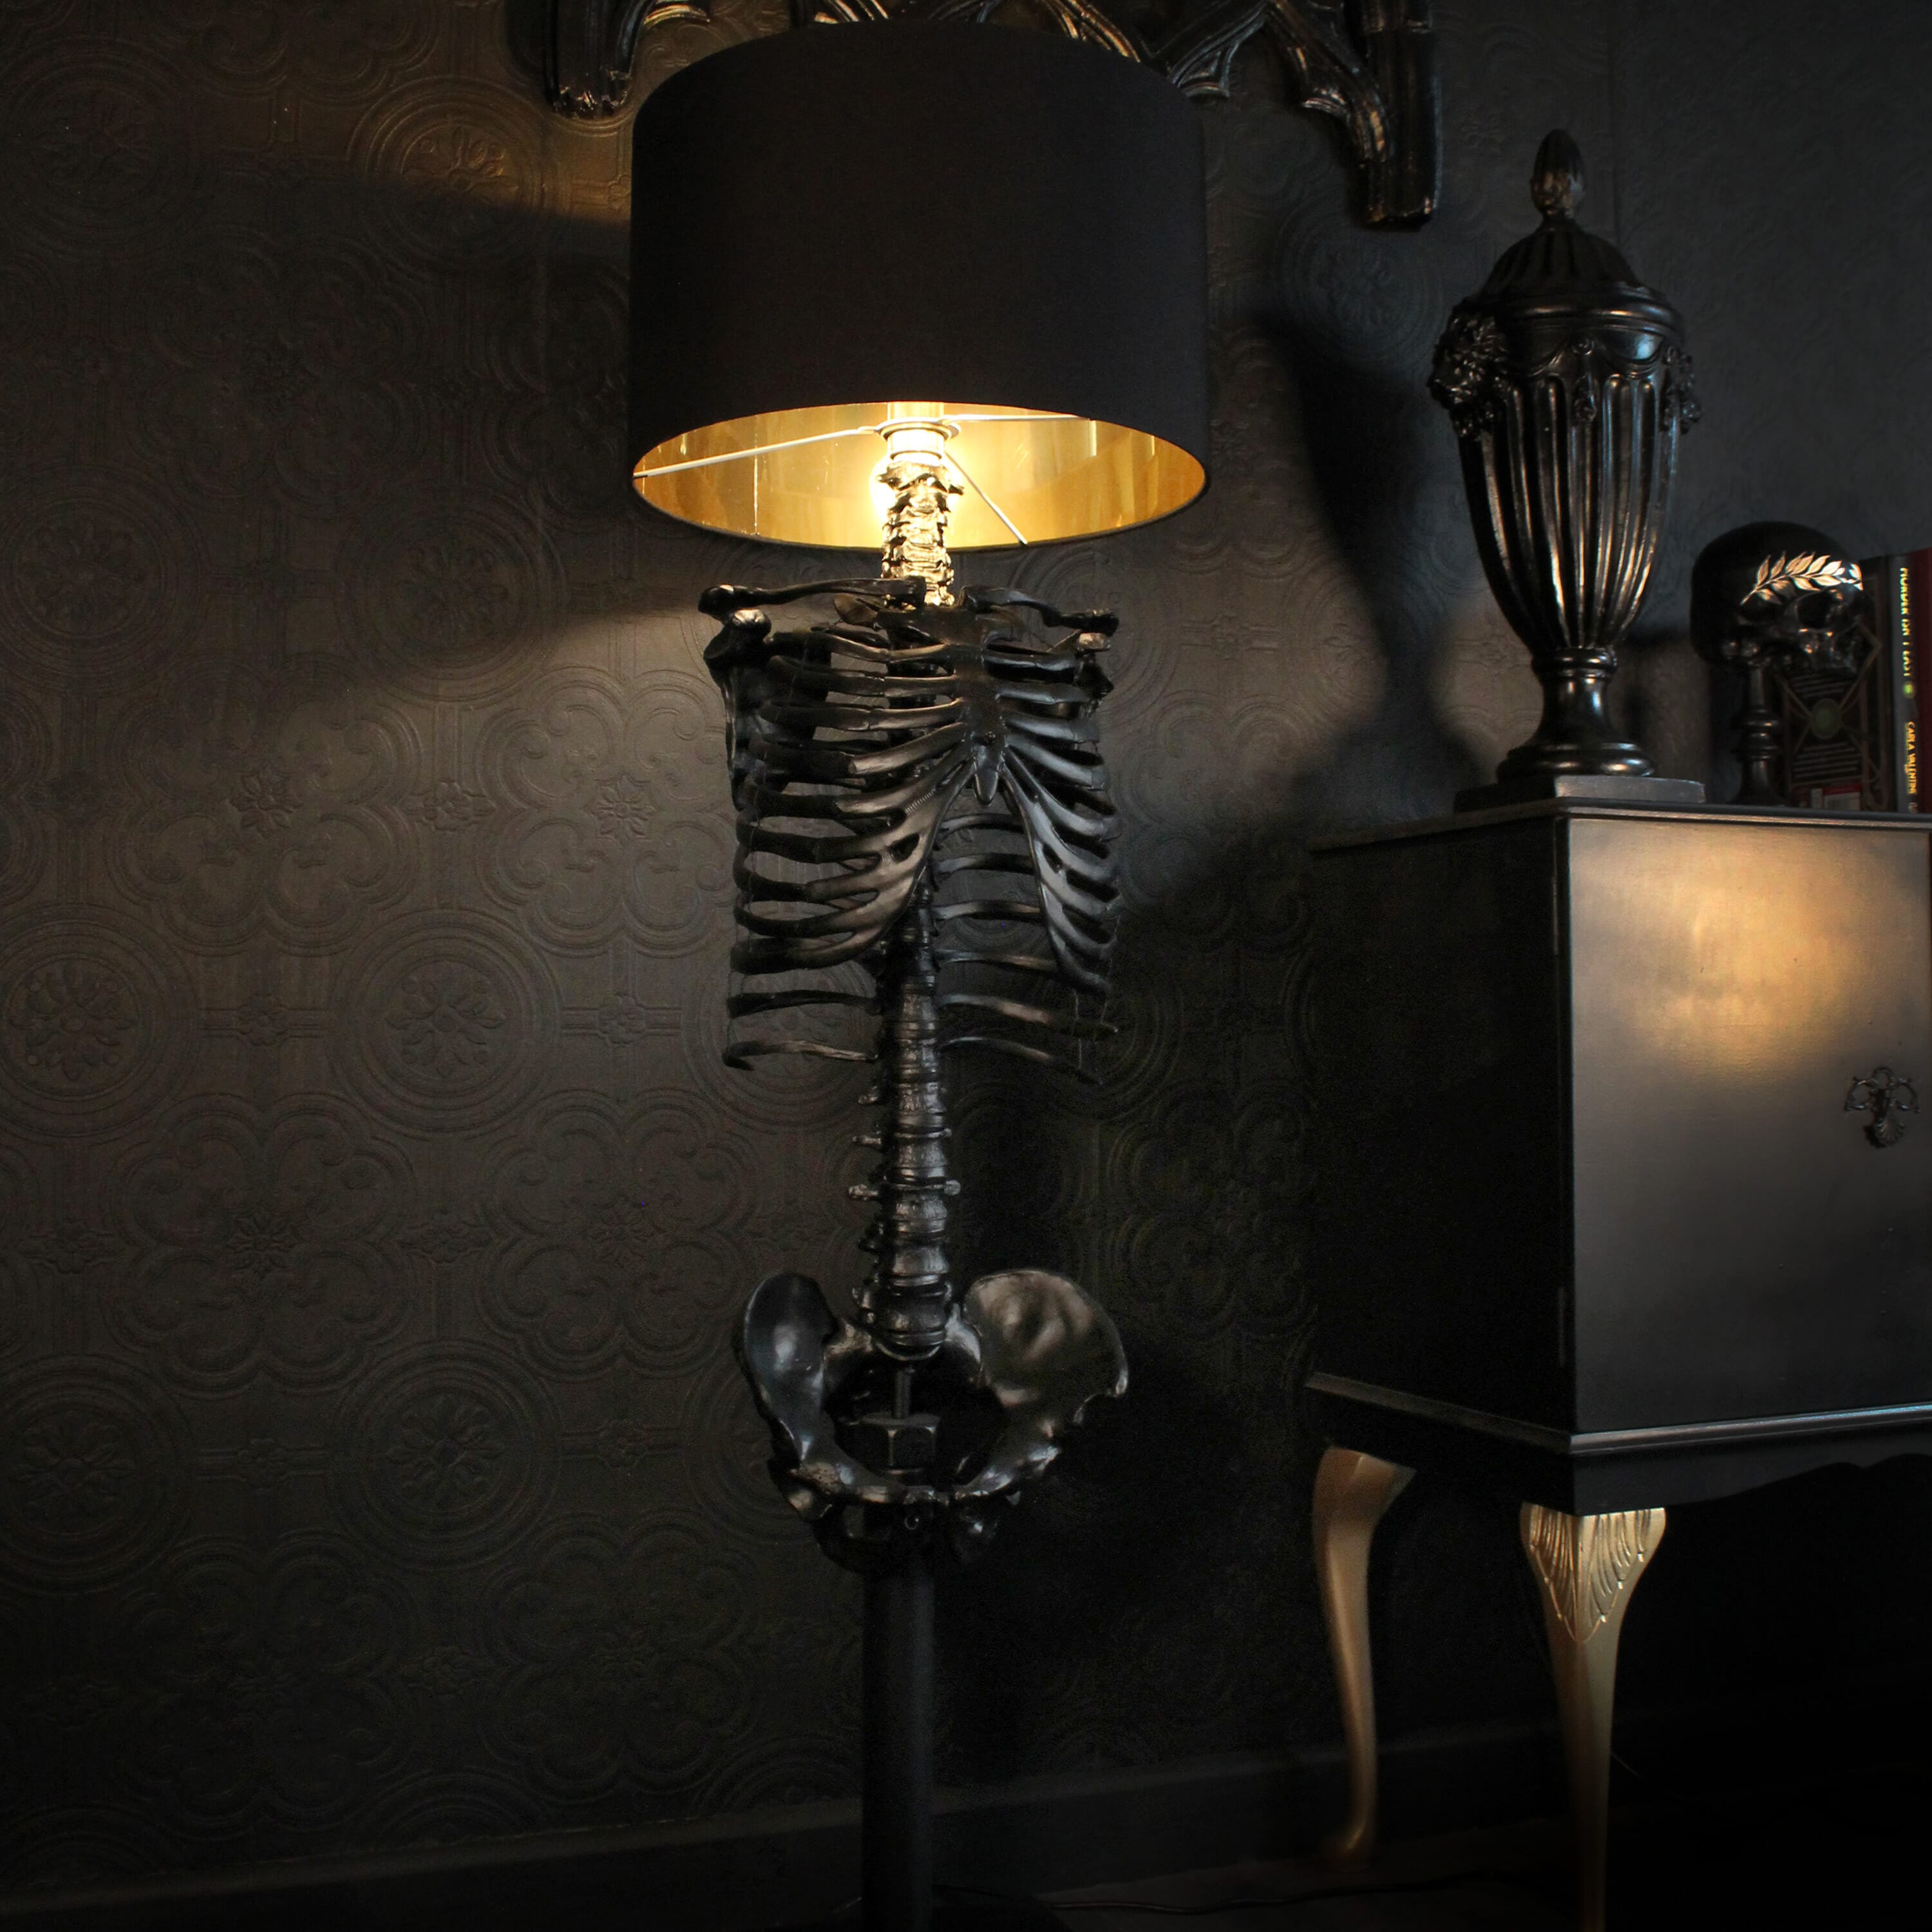 The Black Skeleton Floor Lamp by The Blackened Teeth